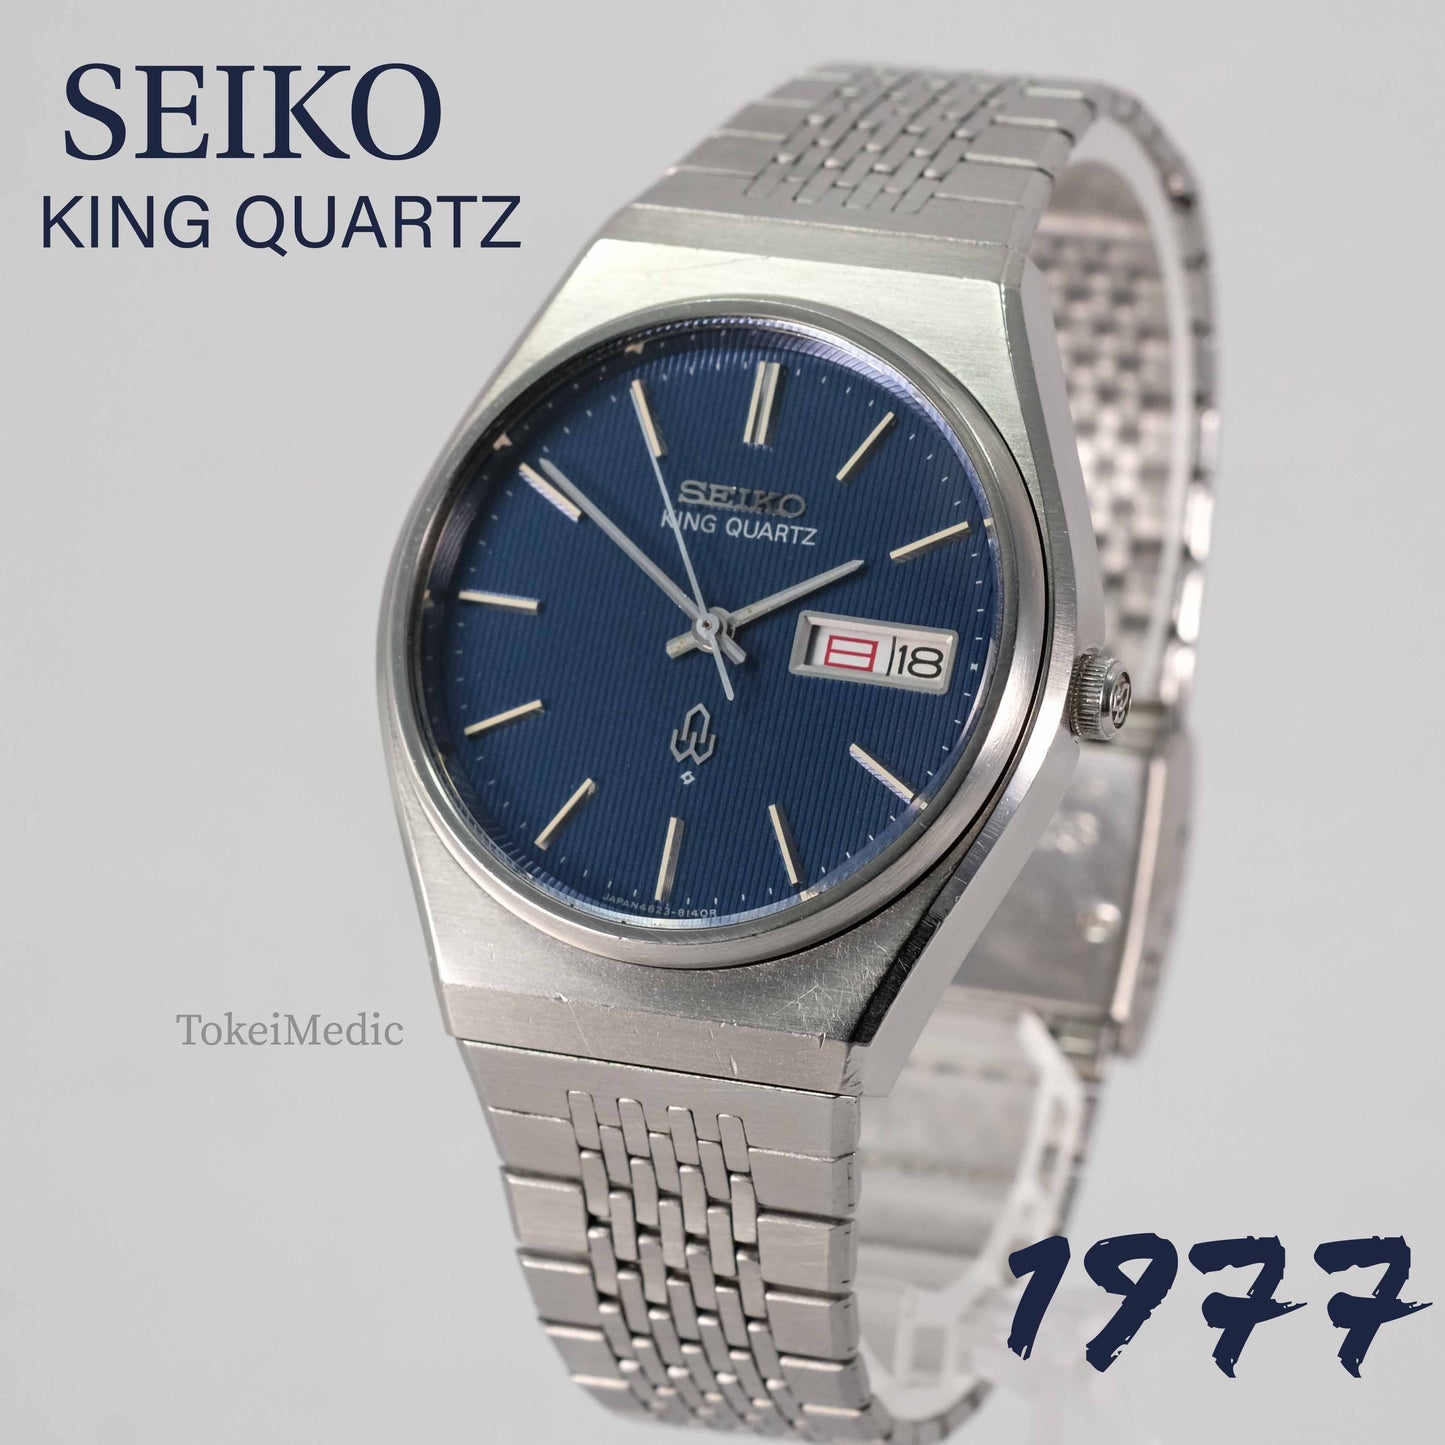 1977 Seiko King Quartz 4823-8130